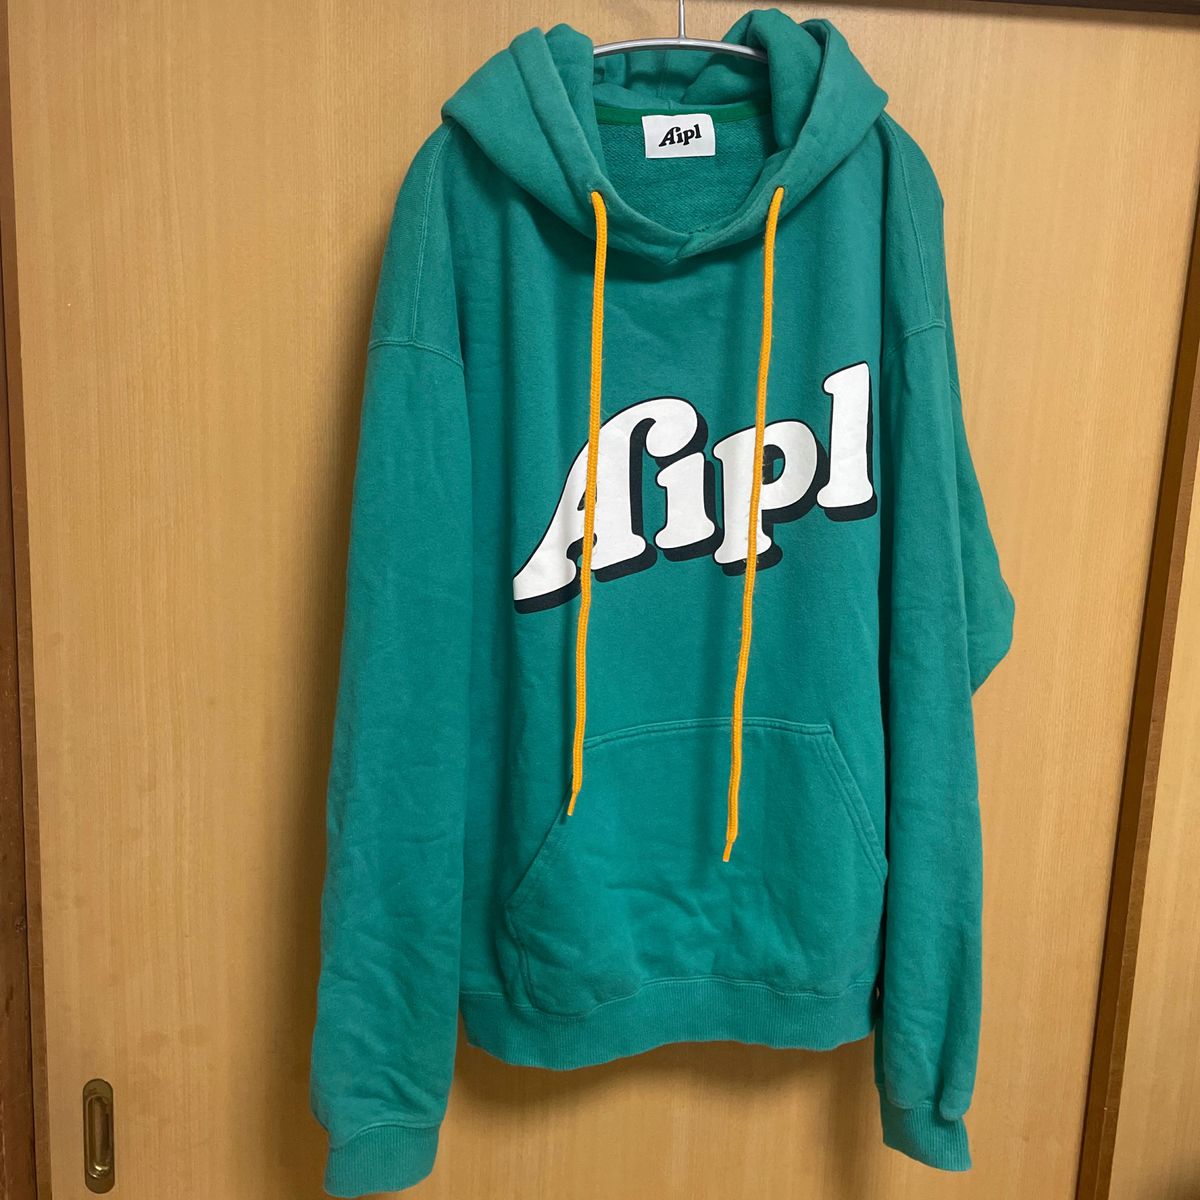 クリアランス販売店 Aipl エイプルパーカーL - トップス